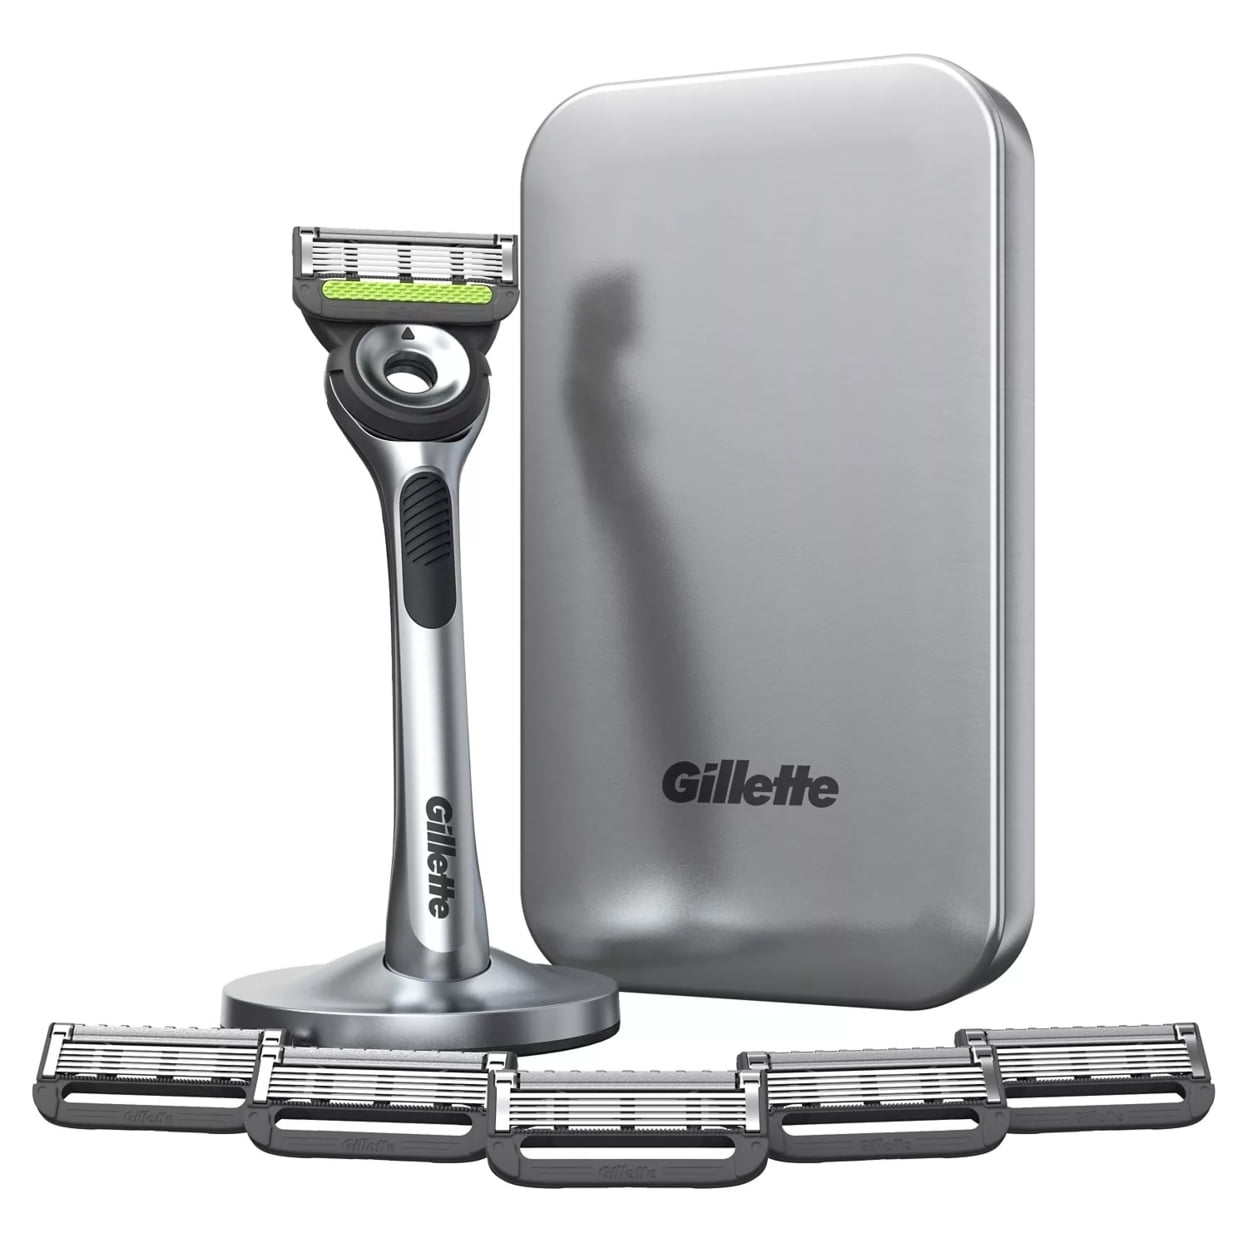 Gillette Labs with Exfoliating Bar by Gillette - Maquinilla de afeitar y  estuche de viaje para hombre, kit de afeitado para hombres, almacenamiento